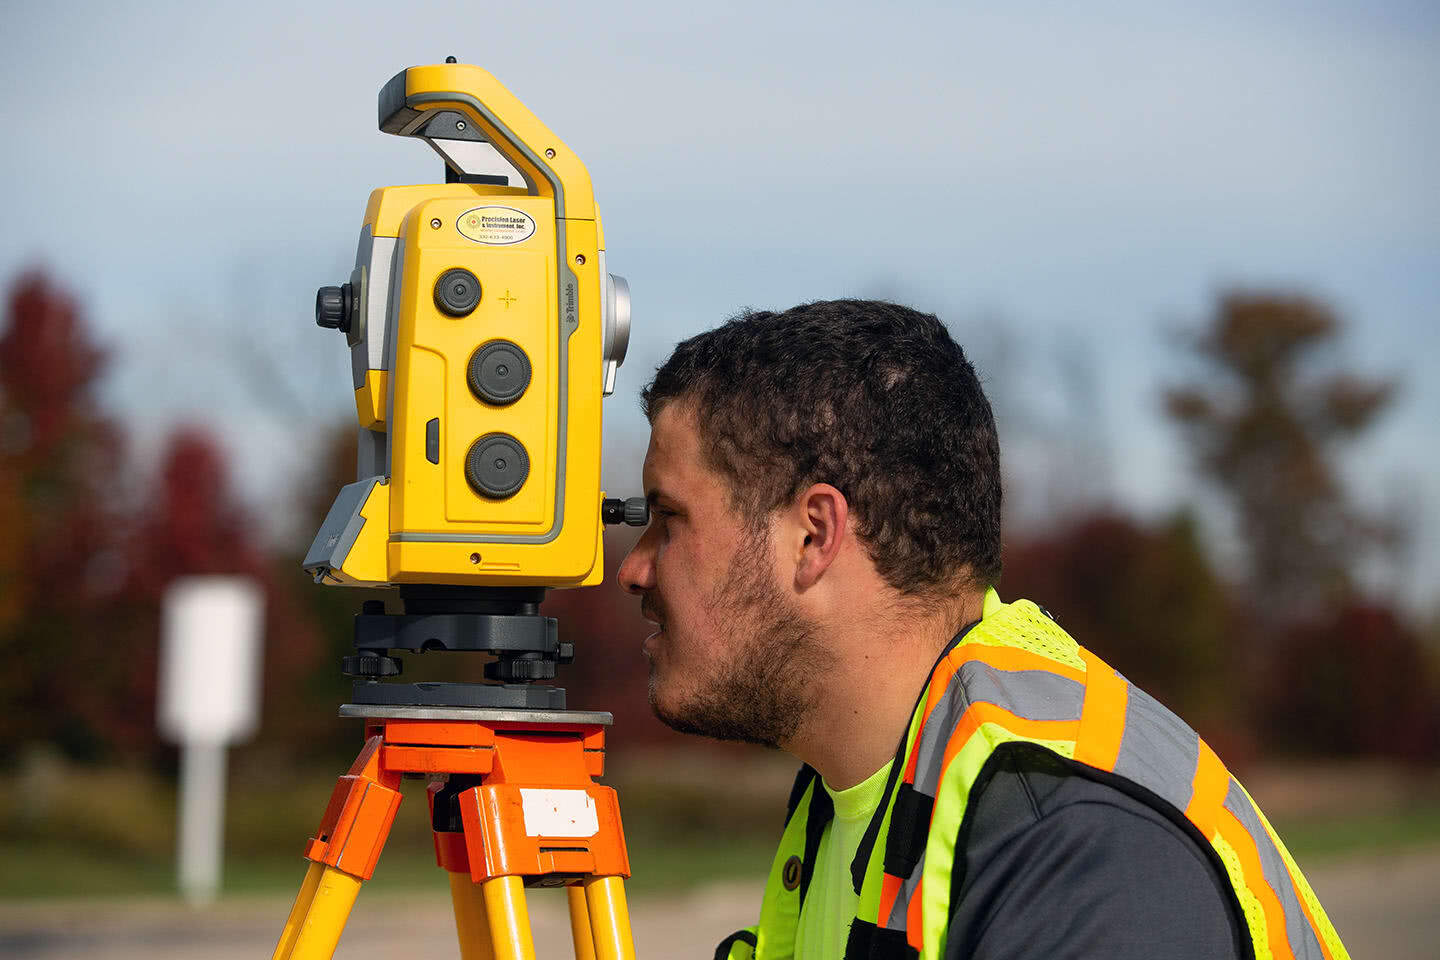 Close-up photo of surveyor using surveying equipment.